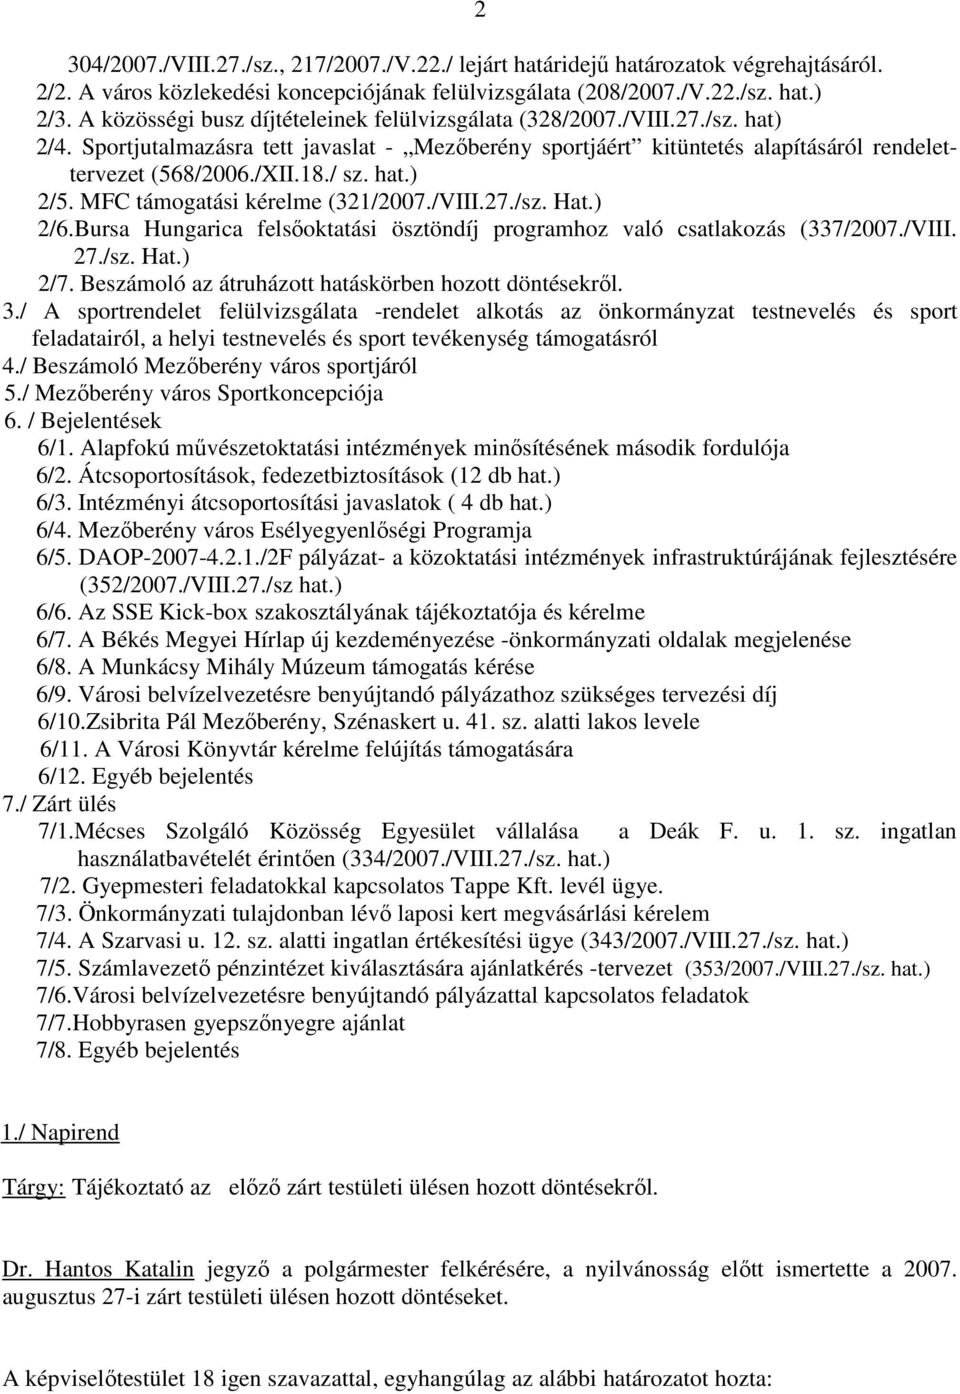 / sz. hat.) 2/5. MFC támogatási kérelme (321/2007./VIII.27./sz. Hat.) 2/6.Bursa Hungarica felsıoktatási ösztöndíj programhoz való csatlakozás (337/2007./VIII. 27./sz. Hat.) 2/7.